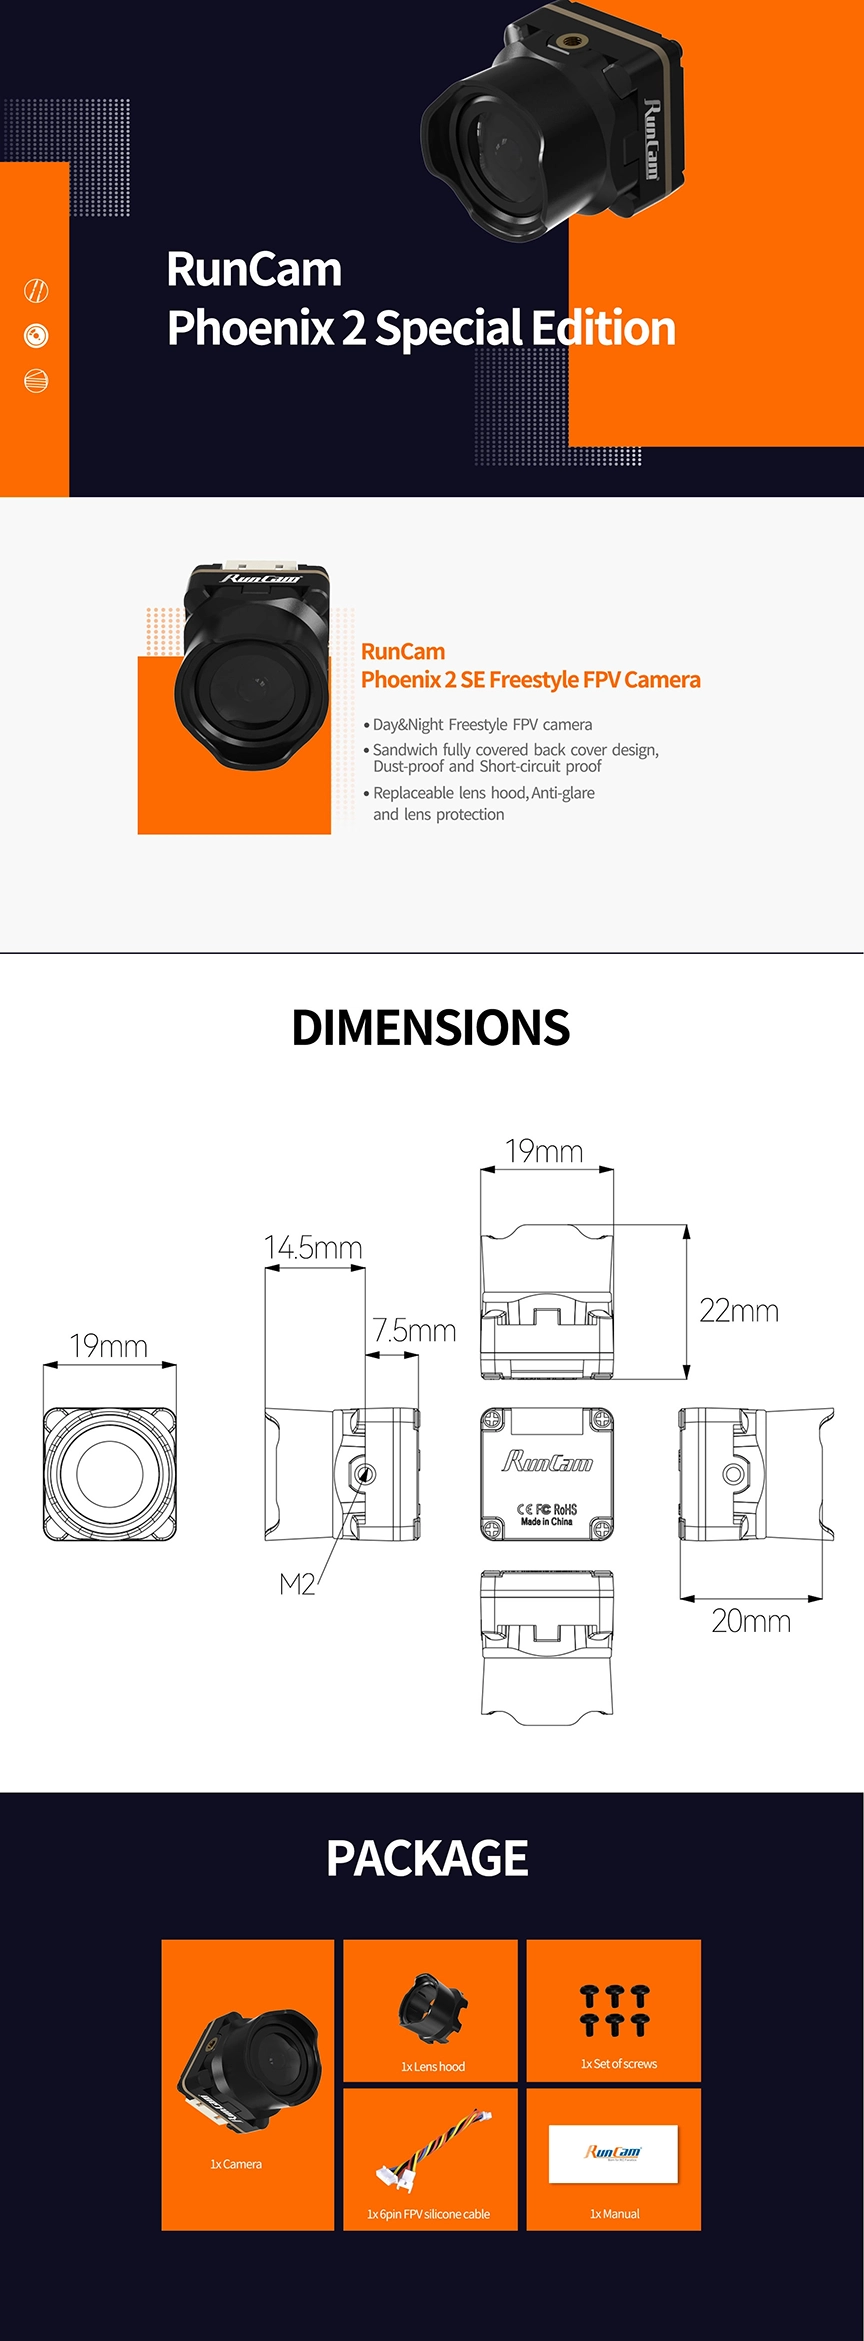 Fotocamera RunCam Phoenix 2 FPV - Infografica in edizione speciale